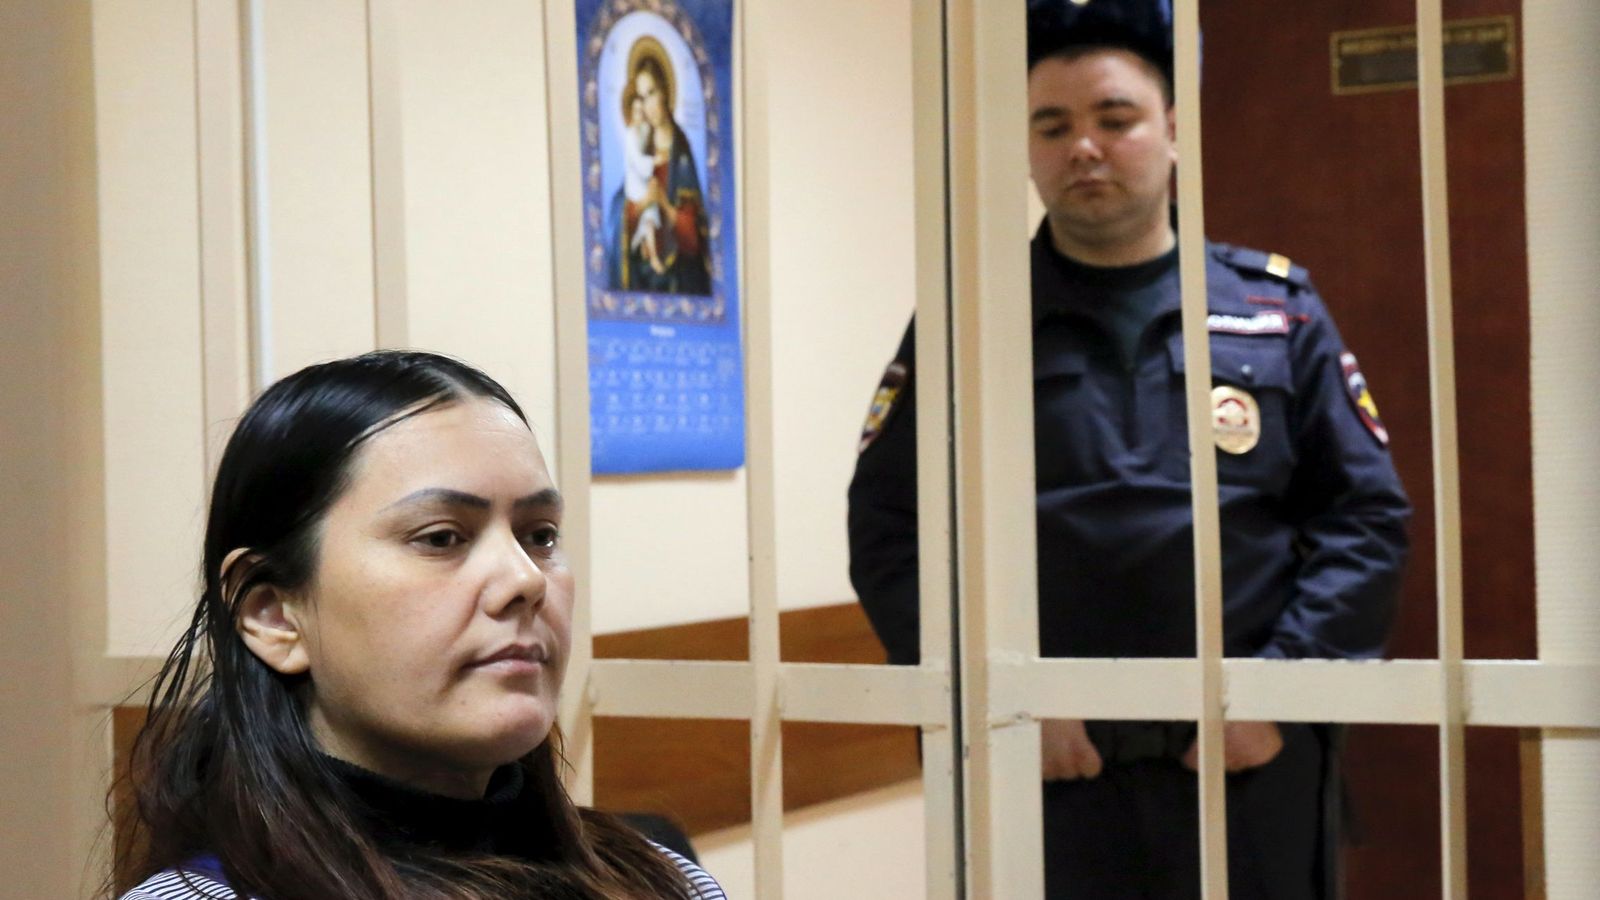 Foto: Gulchejrá Bobokúlova, sentada en la celda de los acusados durante su juicio en Moscú, el 2 de marzo de 2016 (Reuters)